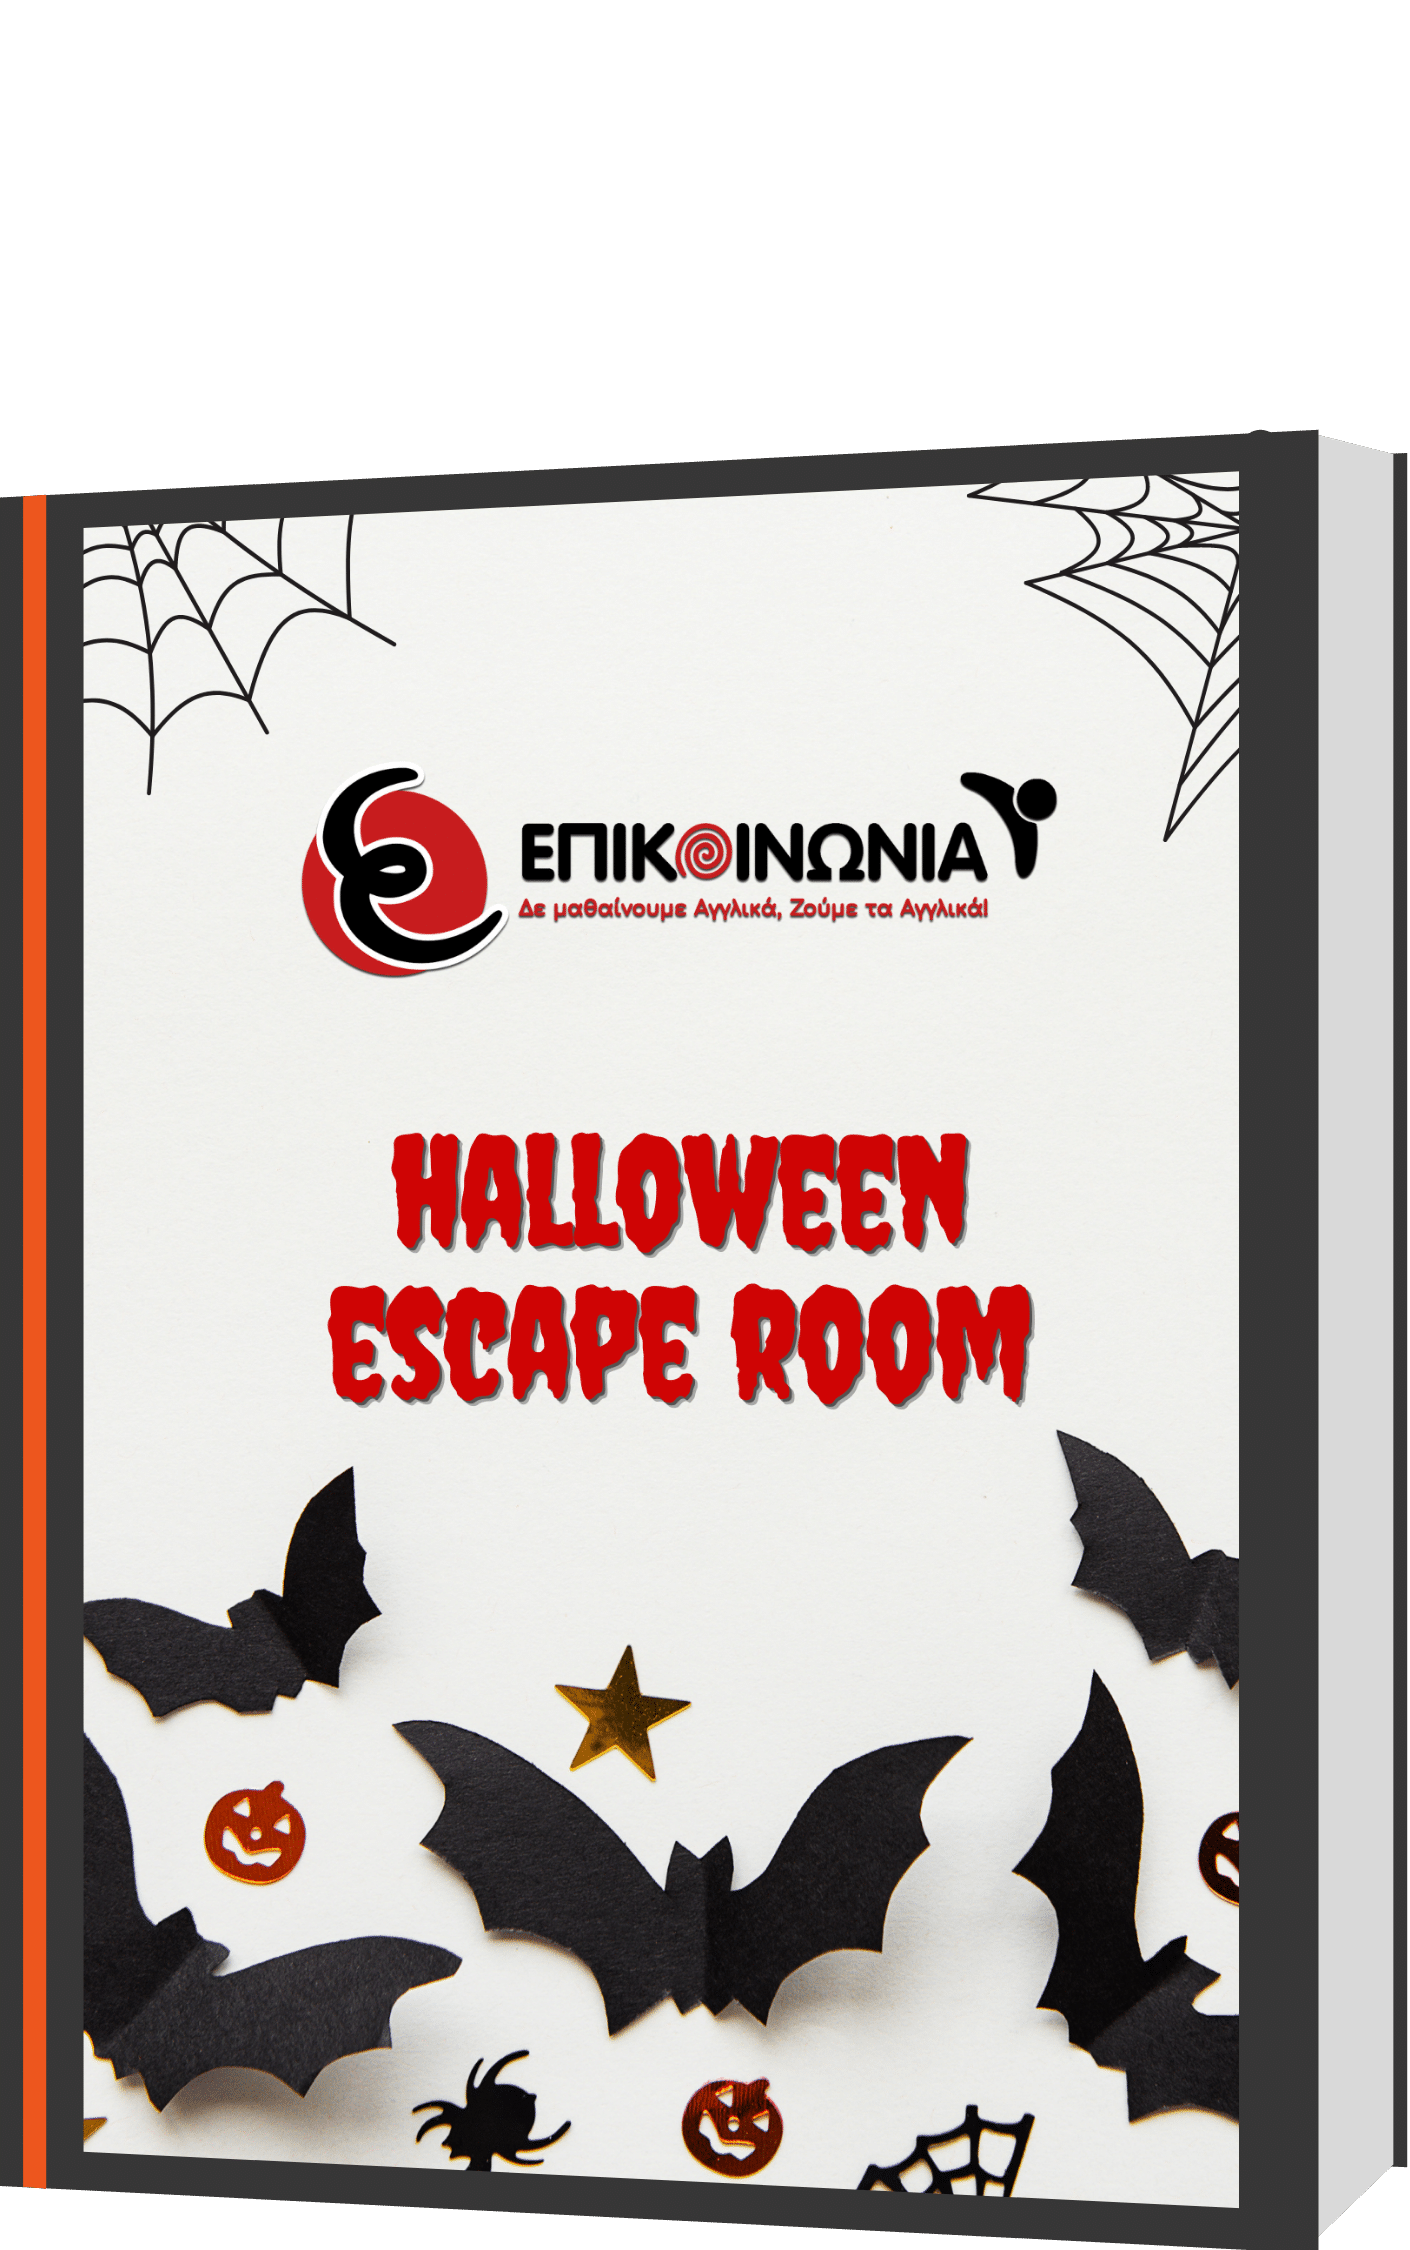 Ηalloween Escape Room